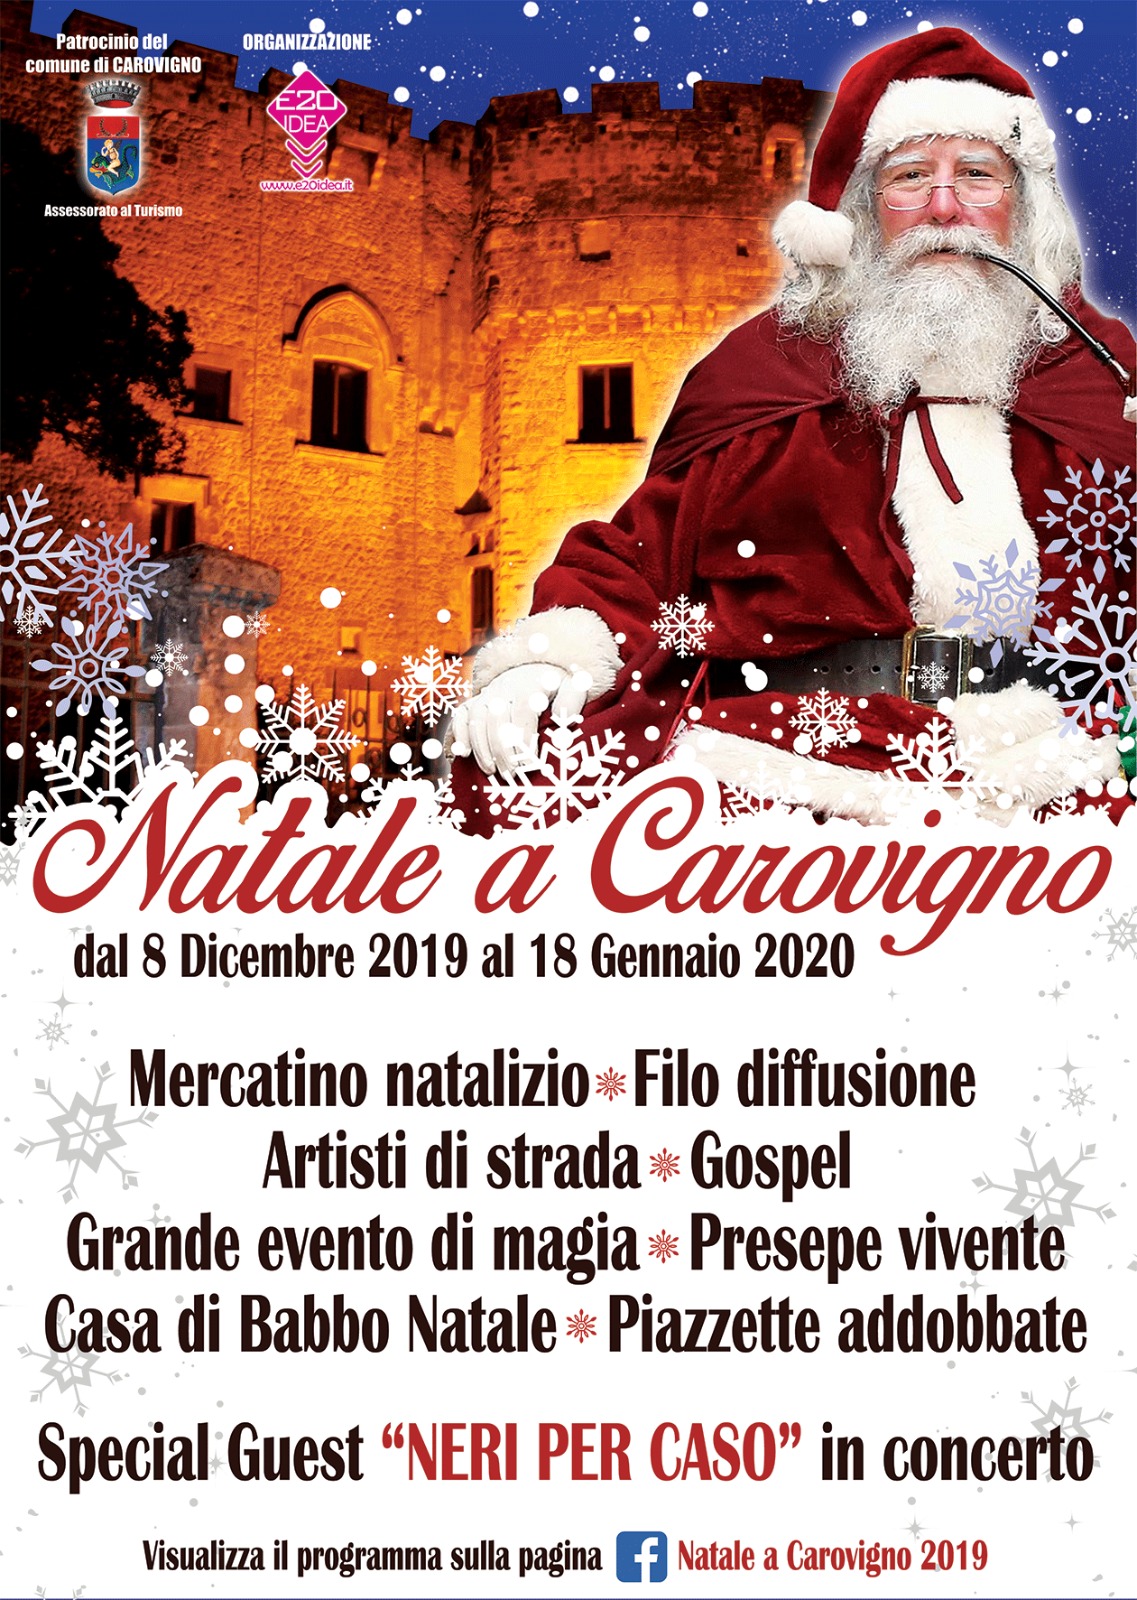 Natale a Carovigno: Special Guest “I Neri per Caso”